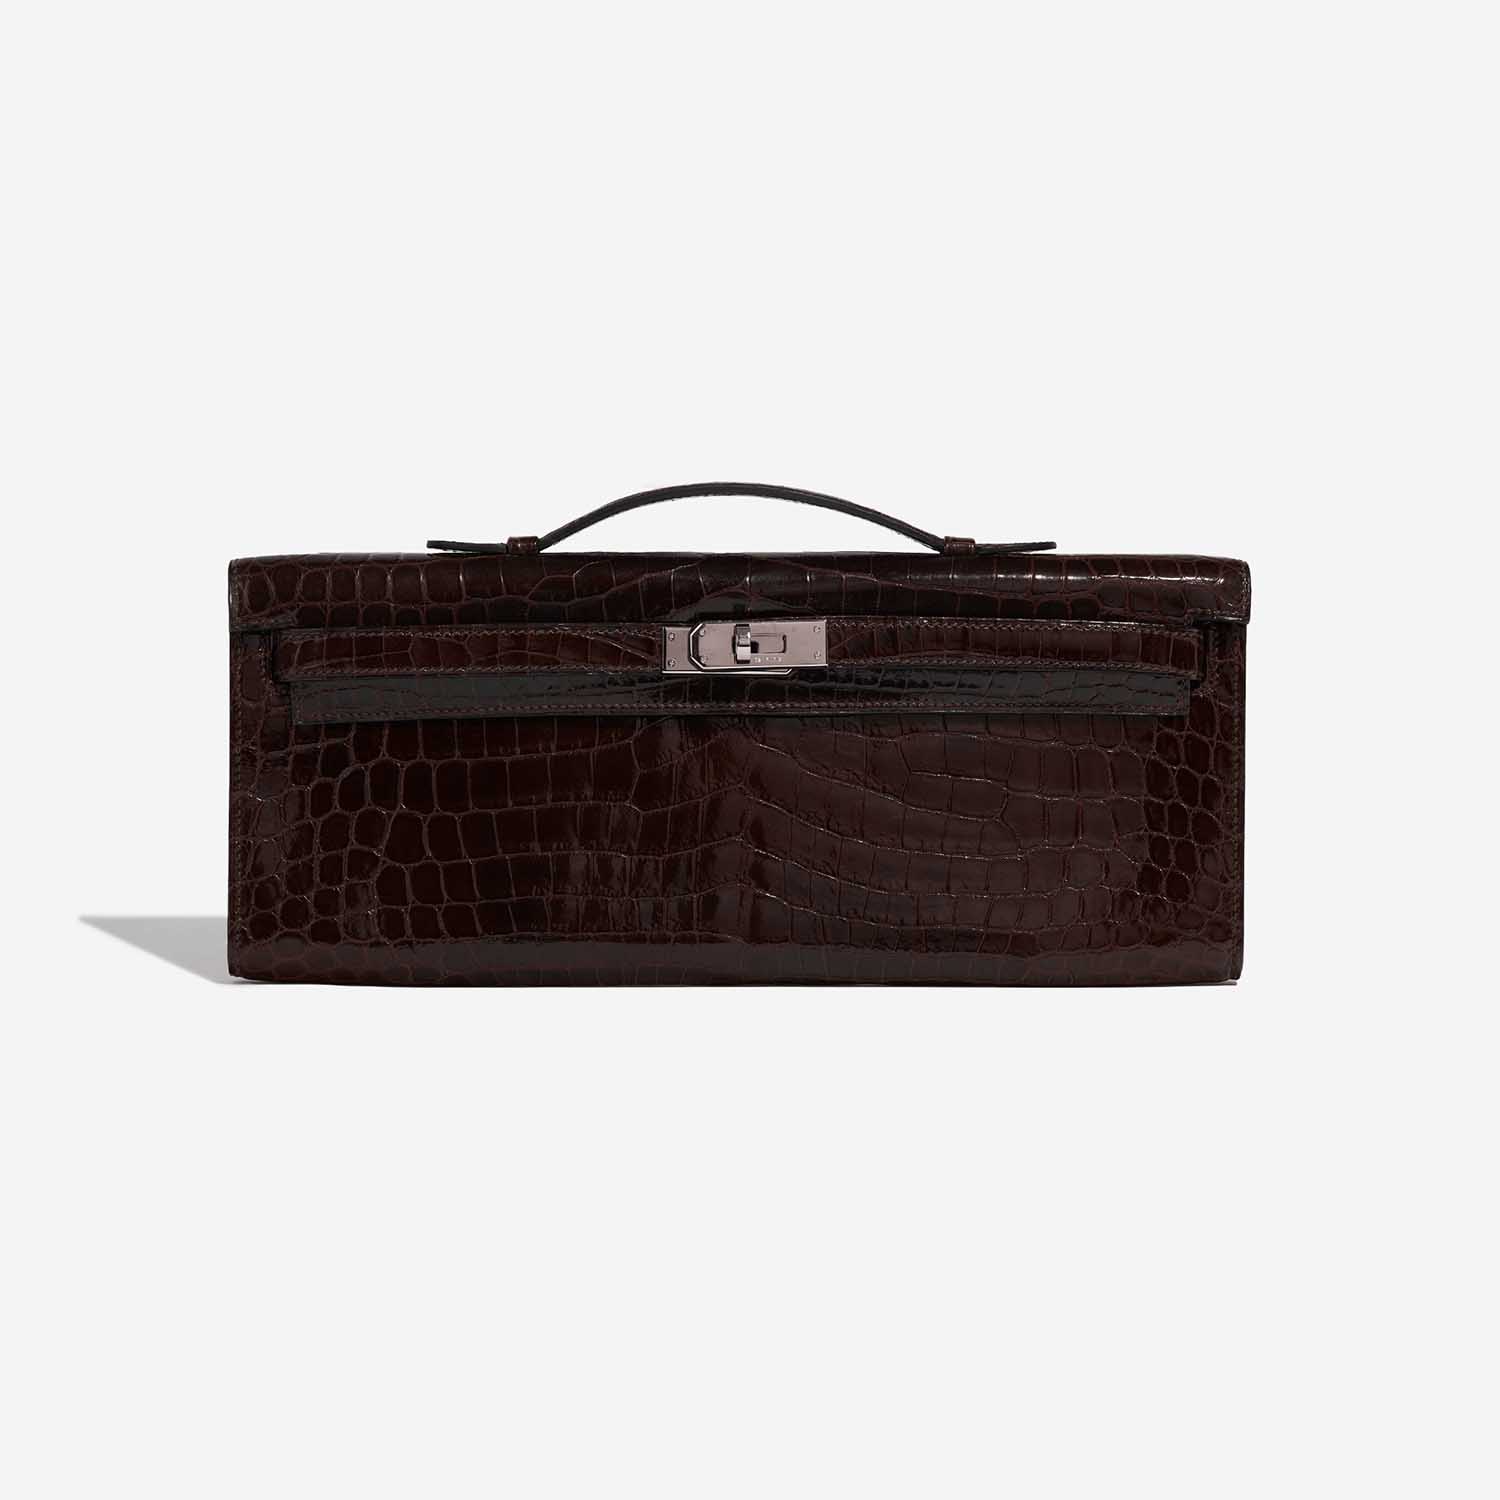 Pre-owned Hermès Tasche Kelly Cut Clutch Niloticus Crocodile Chocolat Brown Front | Verkaufen Sie Ihre Designer-Tasche auf Saclab.com